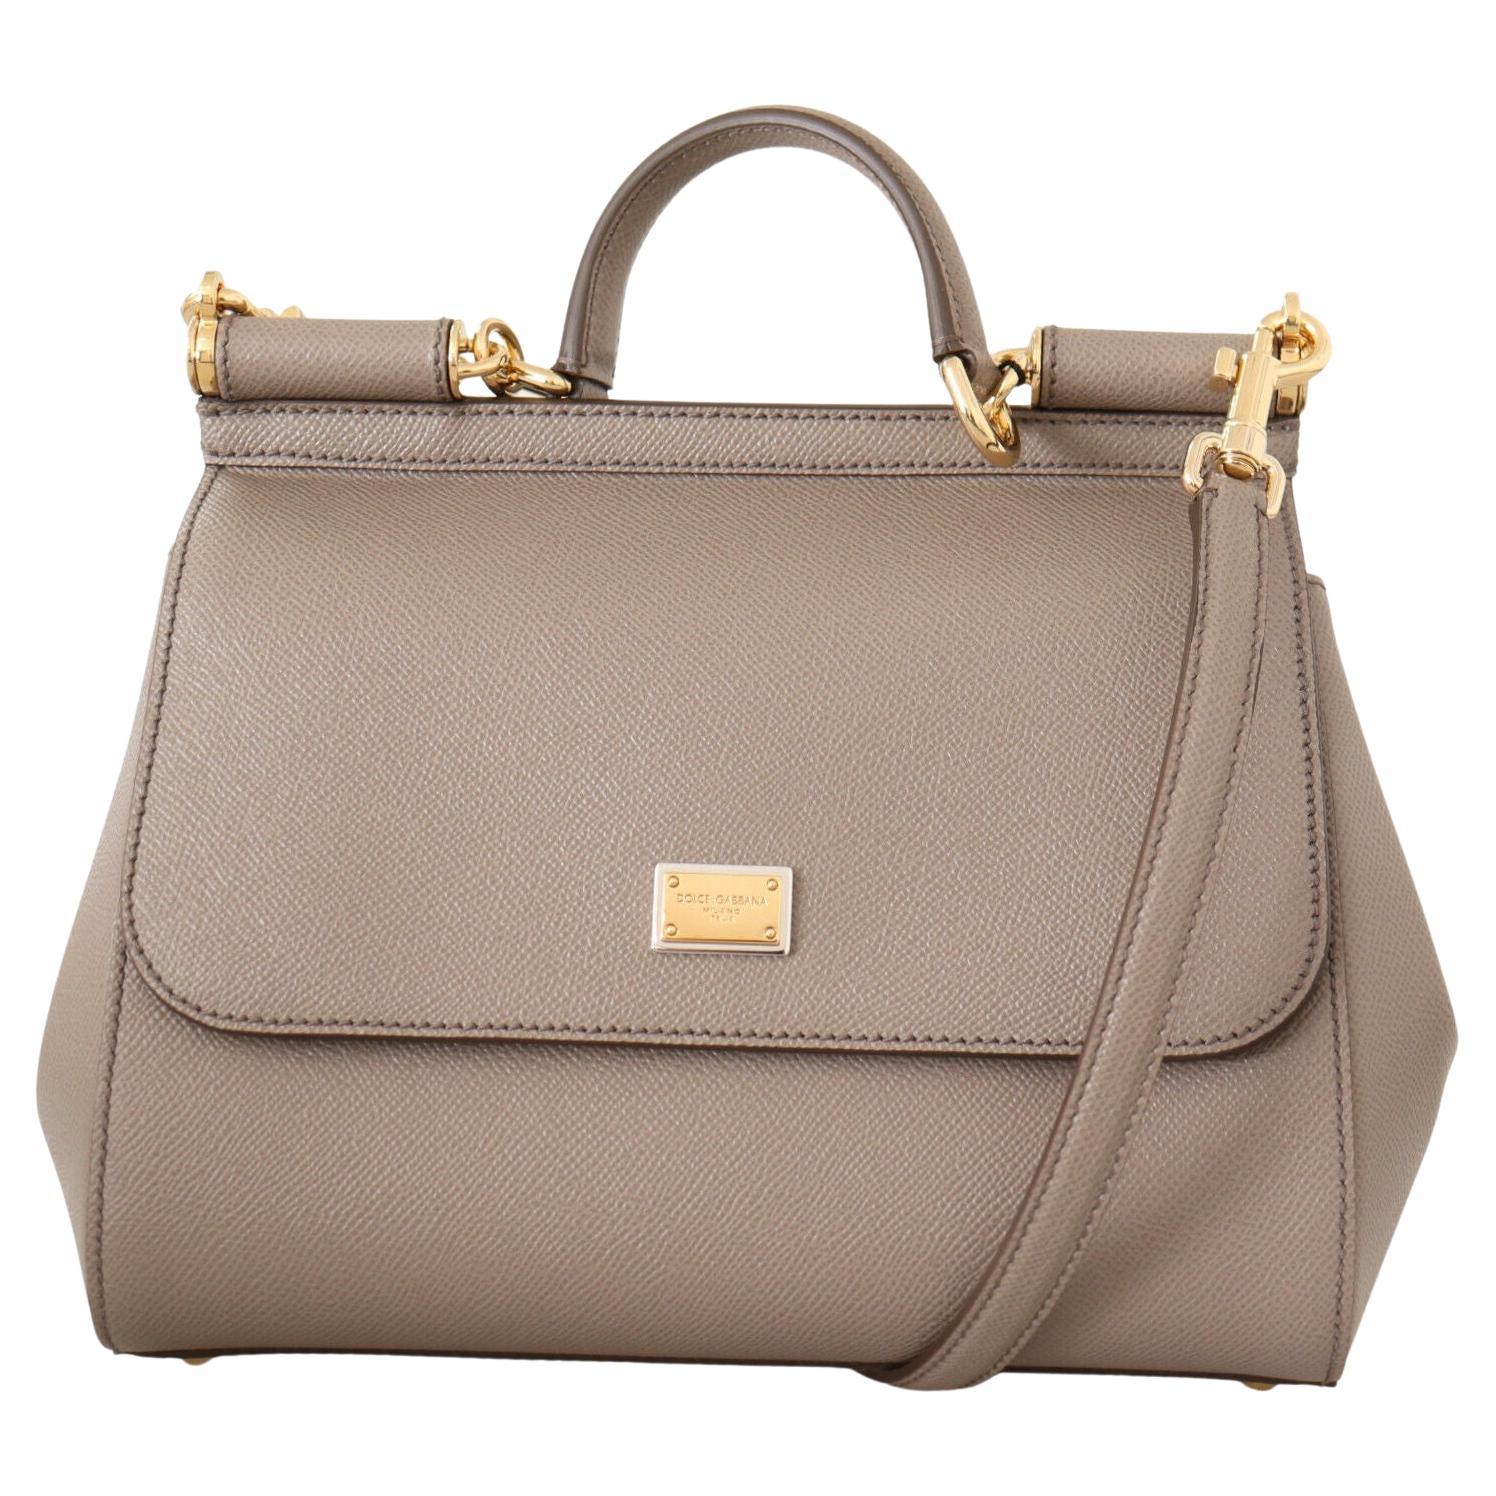 Dolce & Gabbana Beige Brown Leather Sicily Handbag Shoulder Top Handle Bag 